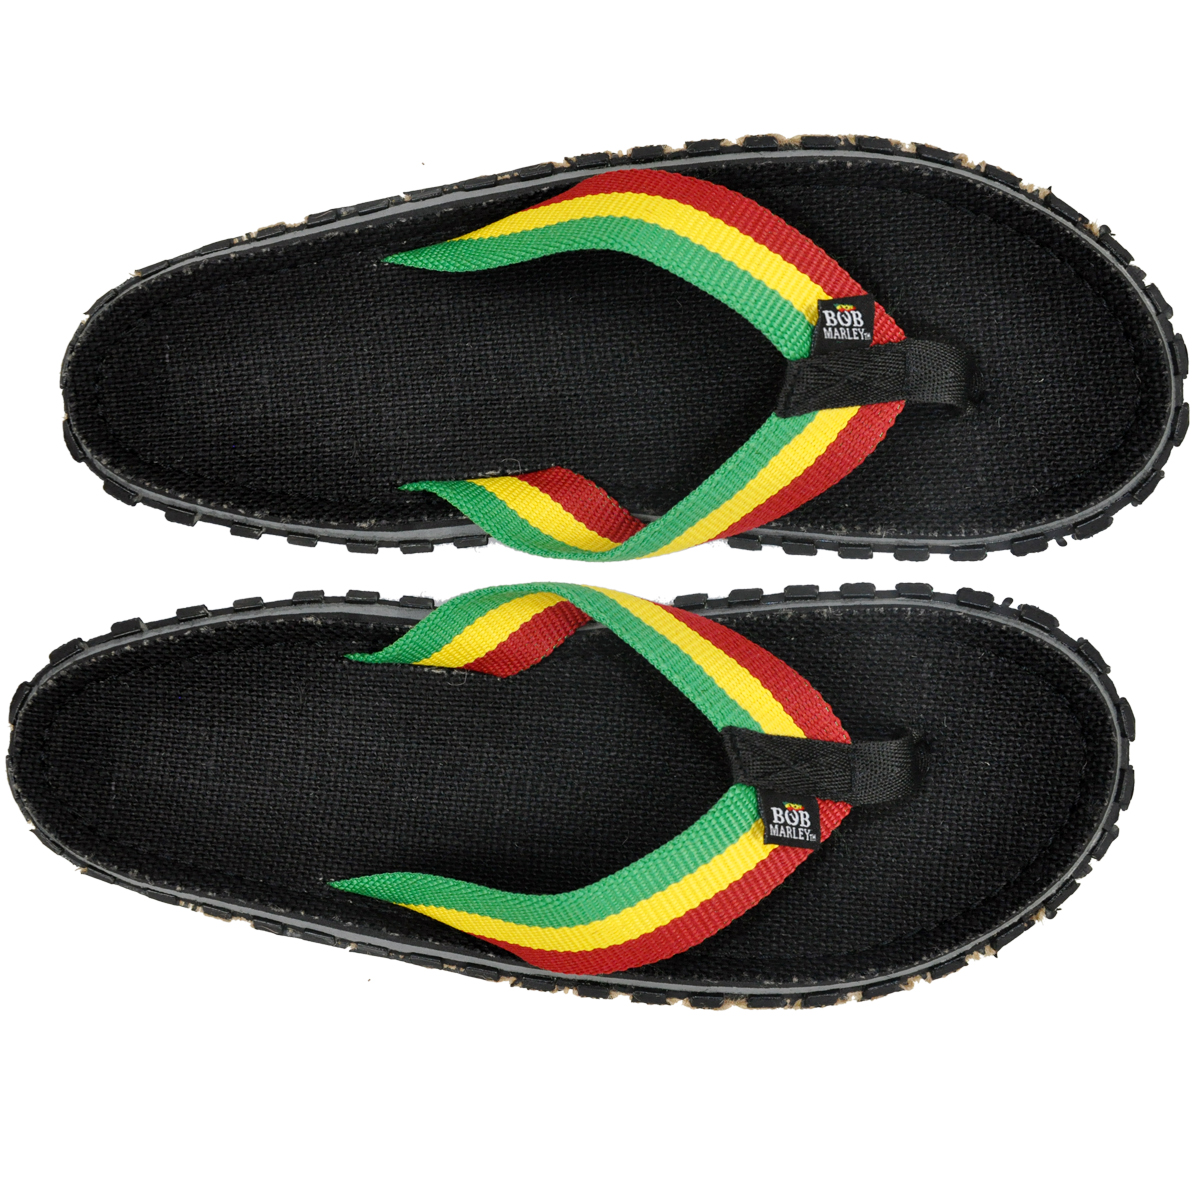 reggae flip flops Cheaper Than Retail 